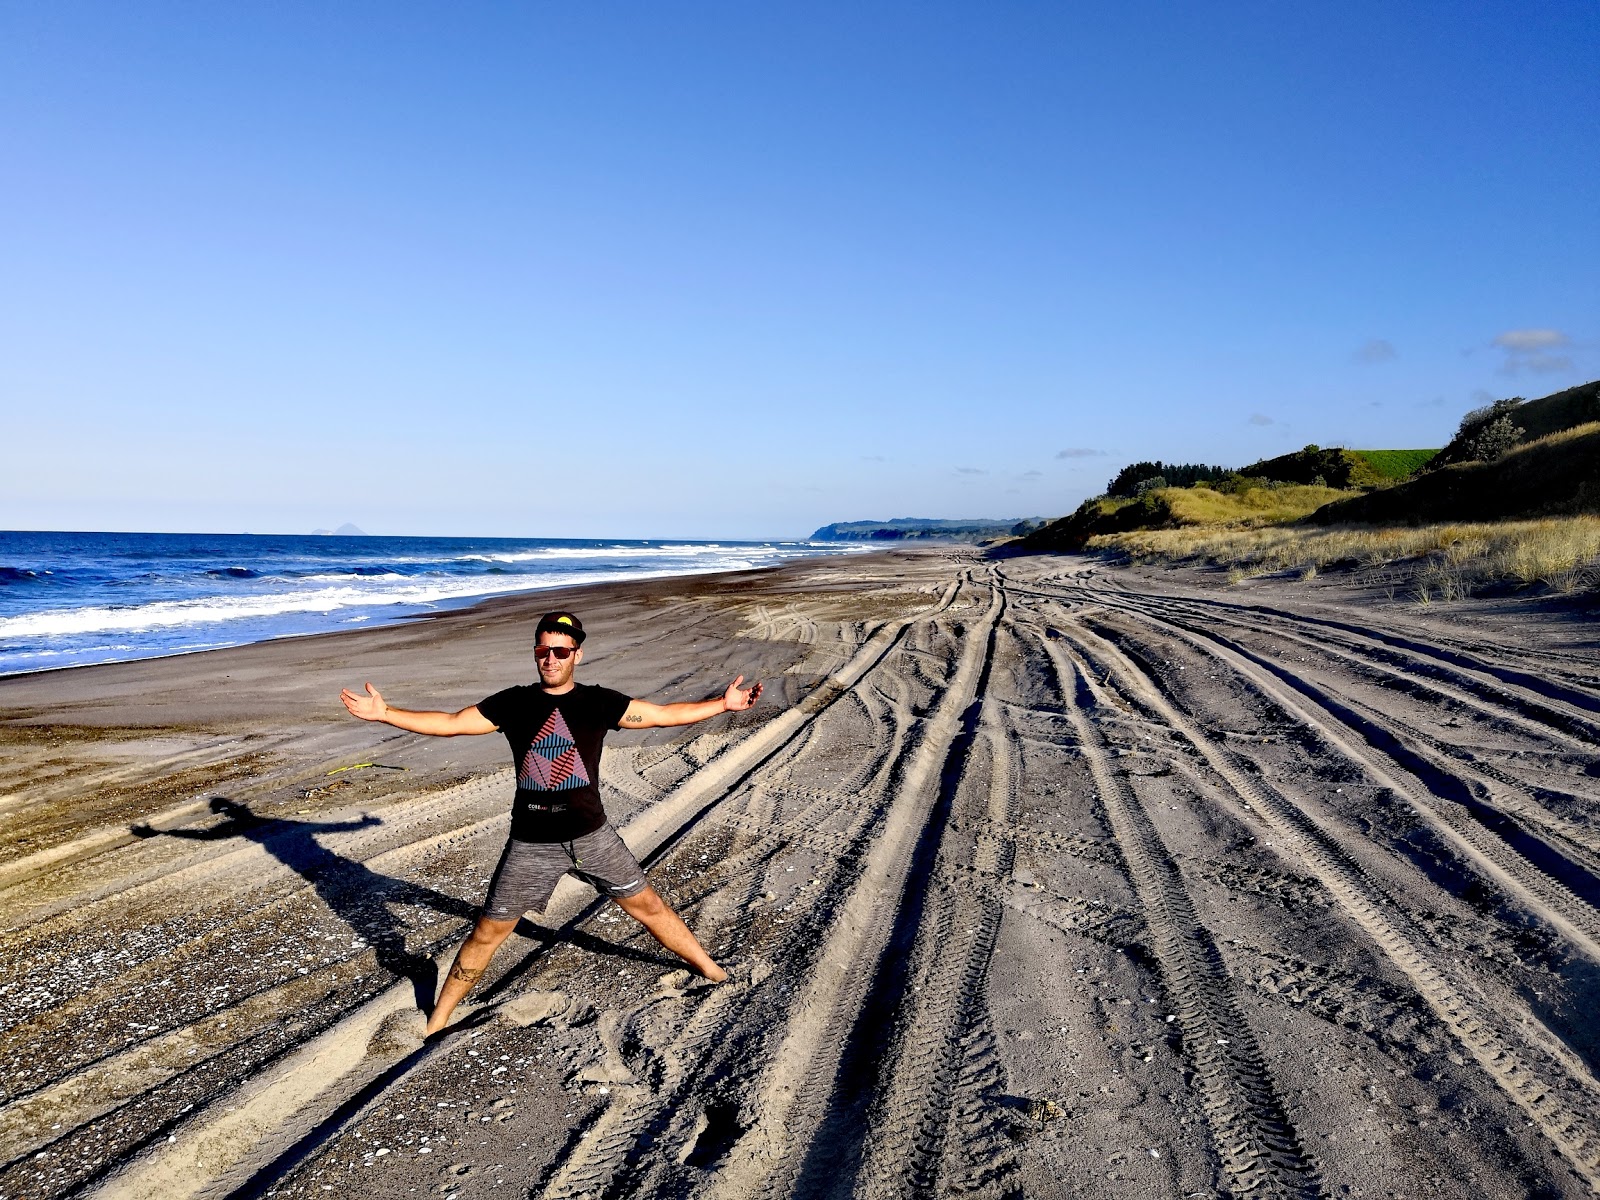 Fotografie cu Otamarakau Beach Access - locul popular printre cunoscătorii de relaxare